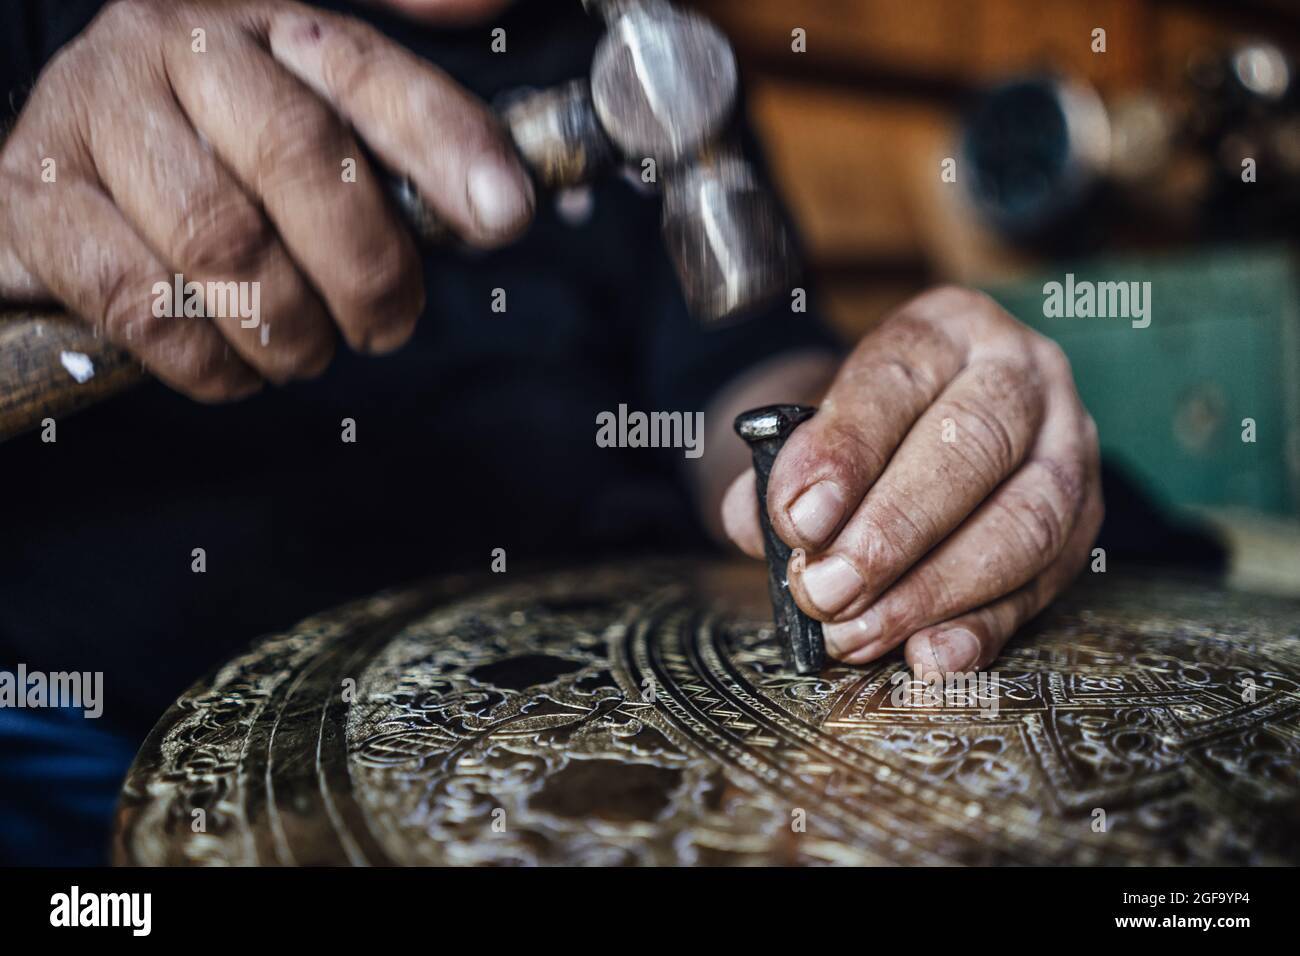 Coppersmith algérien dans son atelier Banque D'Images